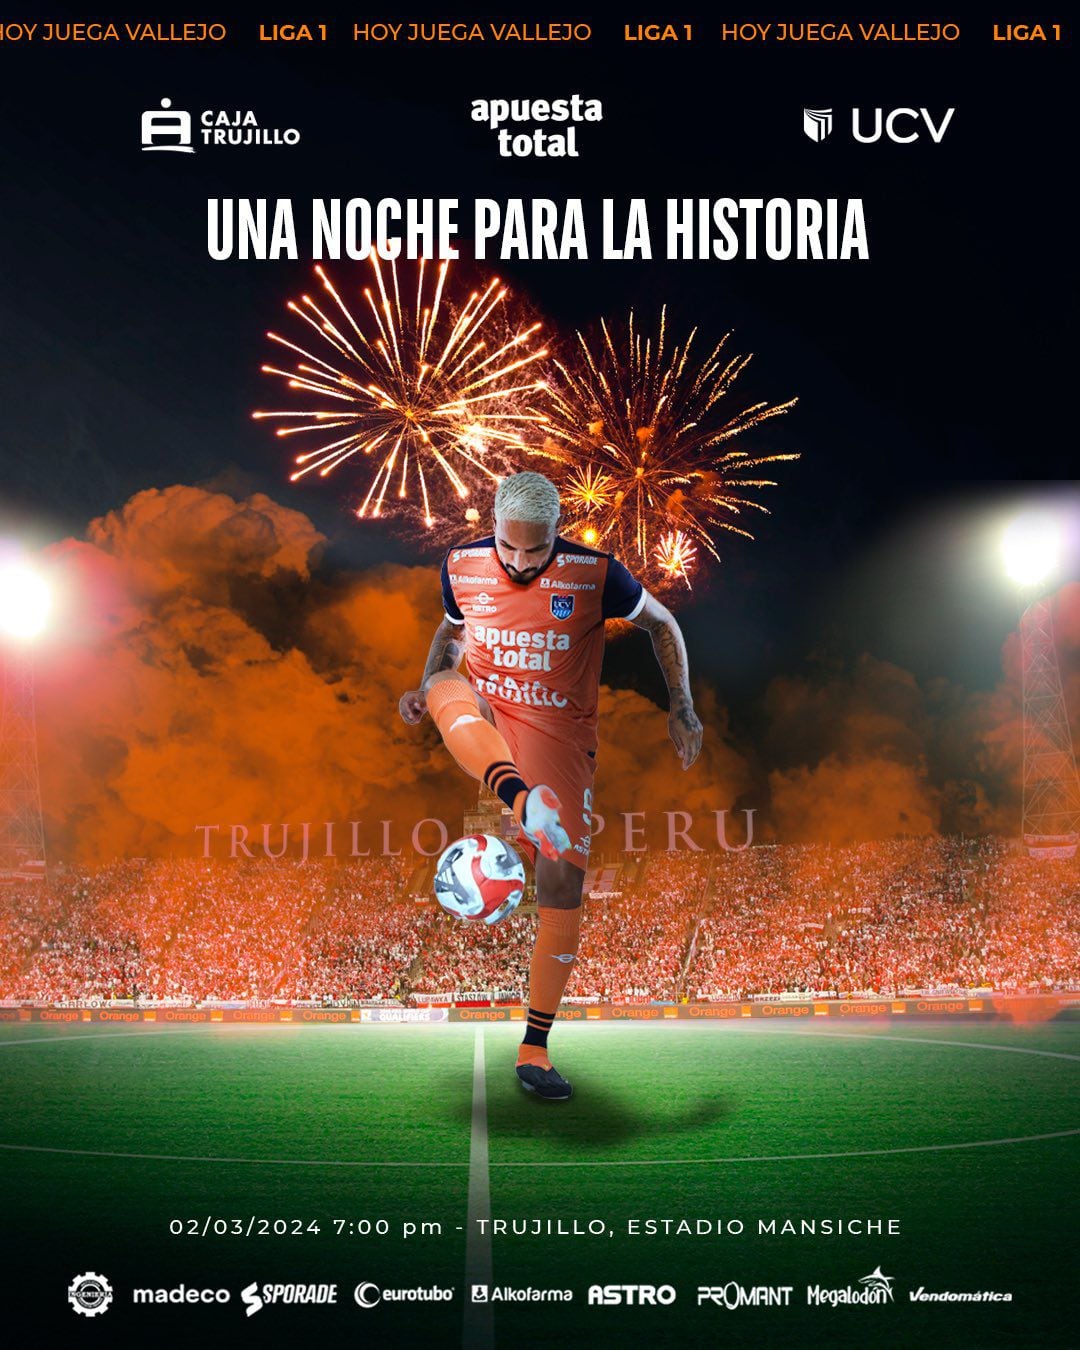 Paolo Guerrero jugará su primer partido en la máxima categoría del fútbol peruano tras su larga carrera fuera del país.